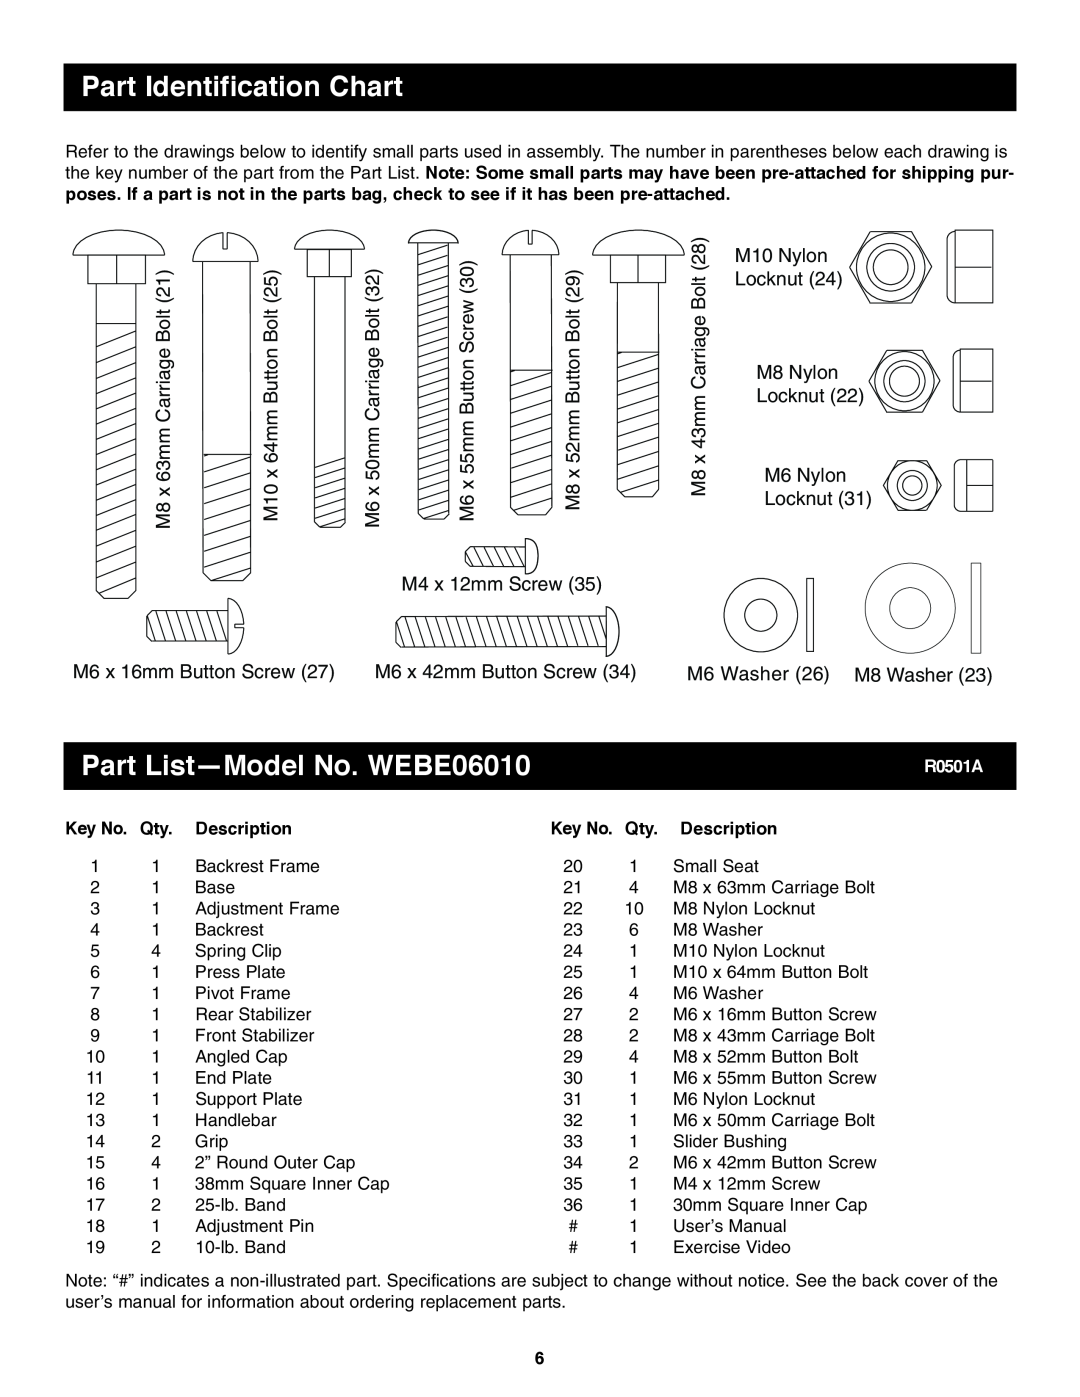 Weider user manual Part Identification Chart, Part List-Model No. WEBE06010 